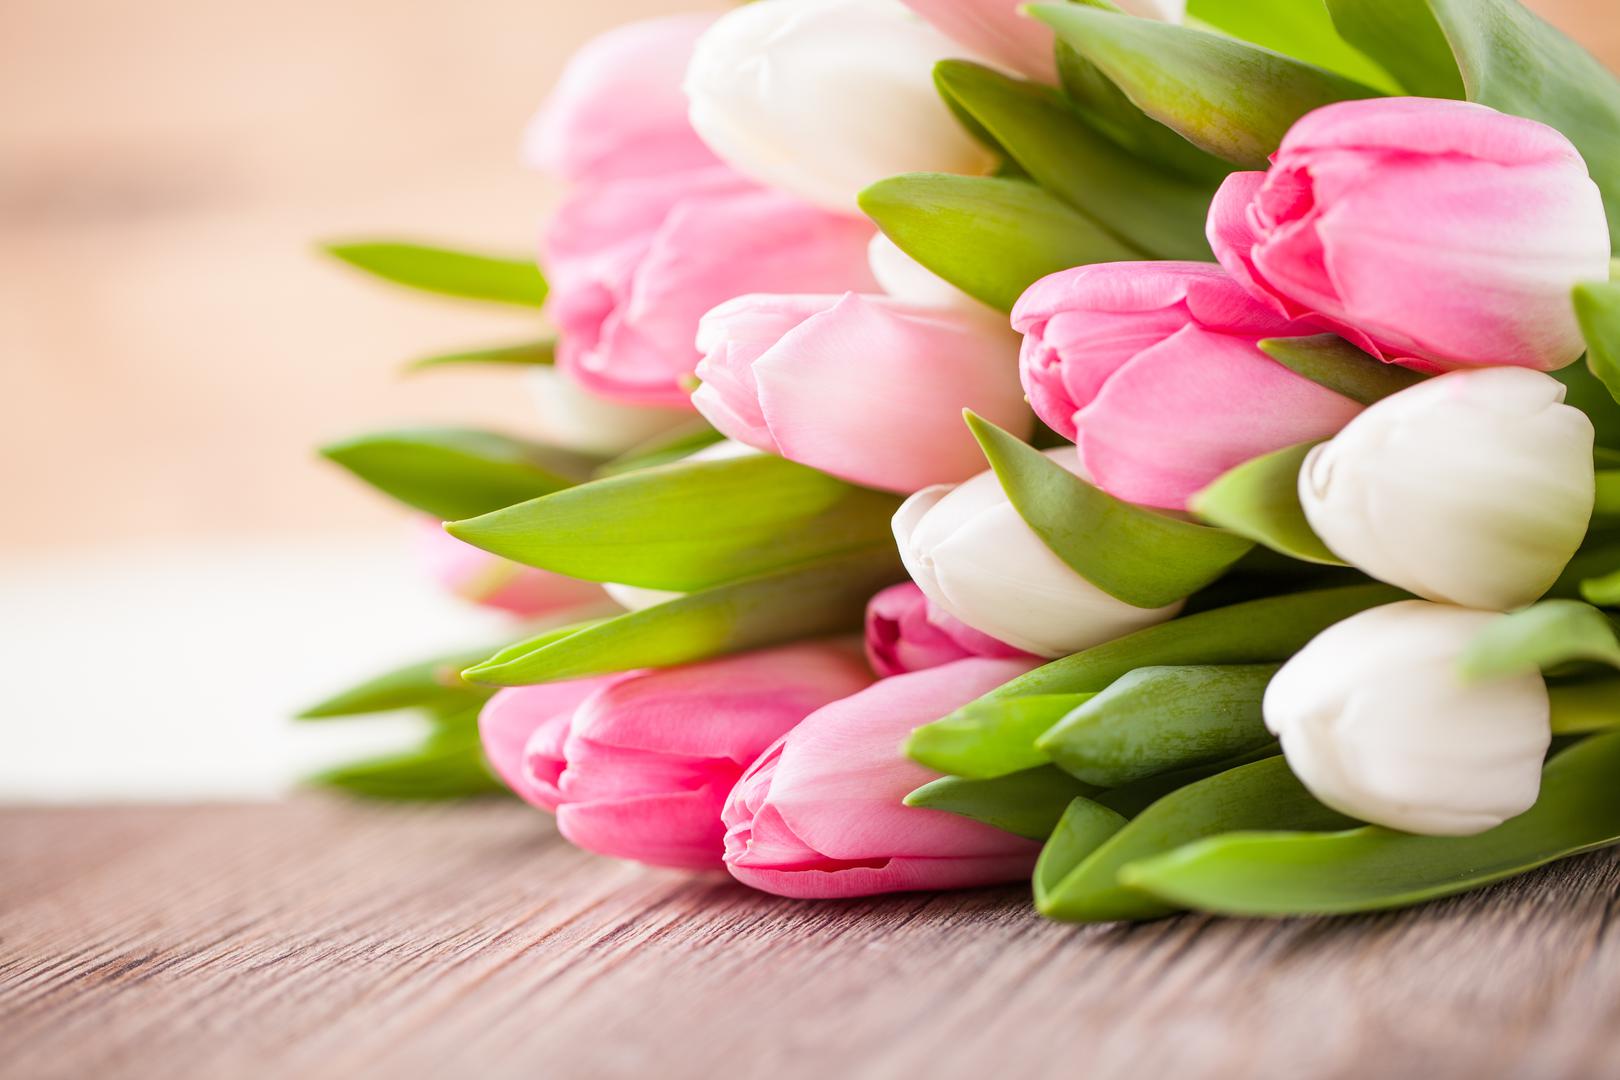 Tulipani: Cijela biljka tulipana predstavlja opasnost za mačke i pse, ali posebno lukovica. Ako se proguta, može uzrokovati gubitak apetita, napadaje, slinjenje, povraćanje, proljev i srčane abnormalnosti.